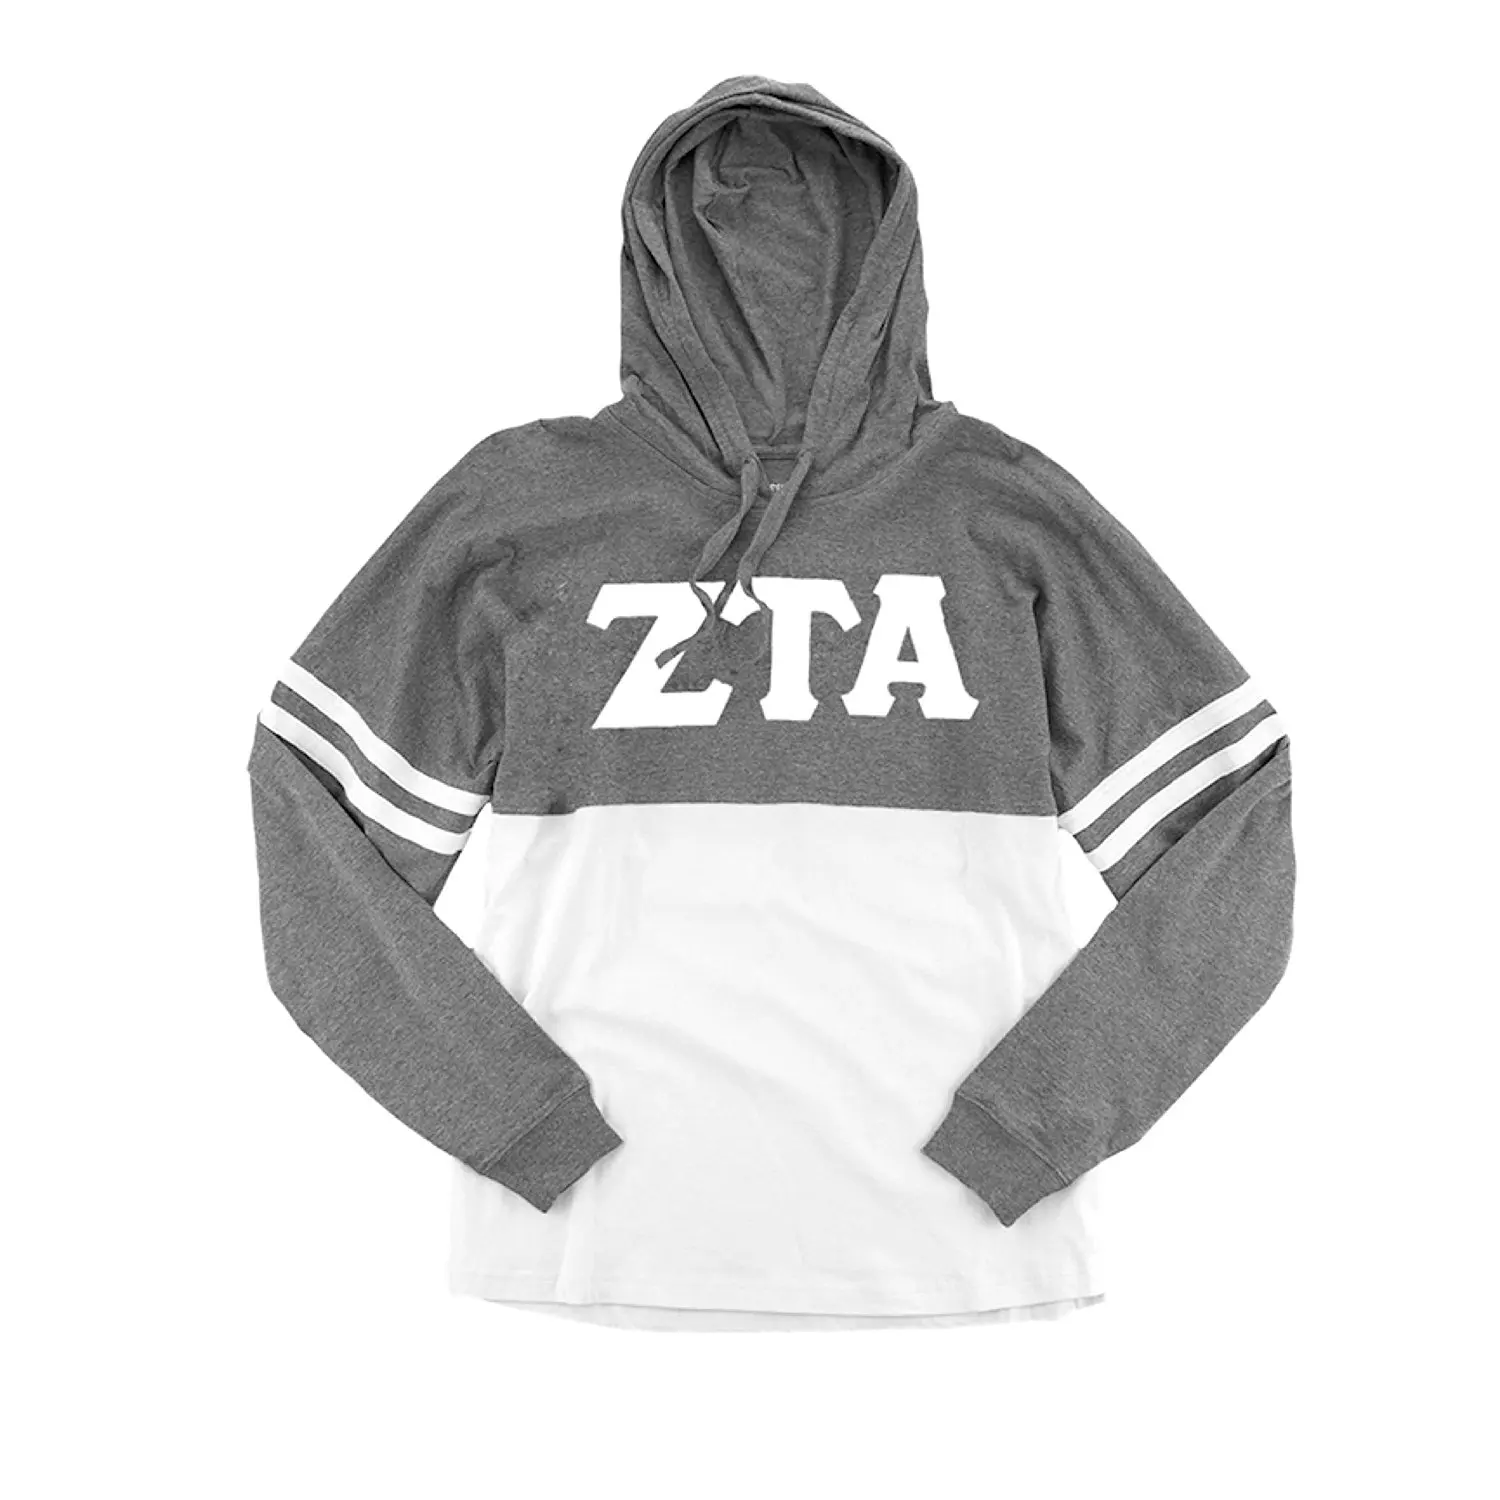 zeta tau alpha corduroy sweatshirt